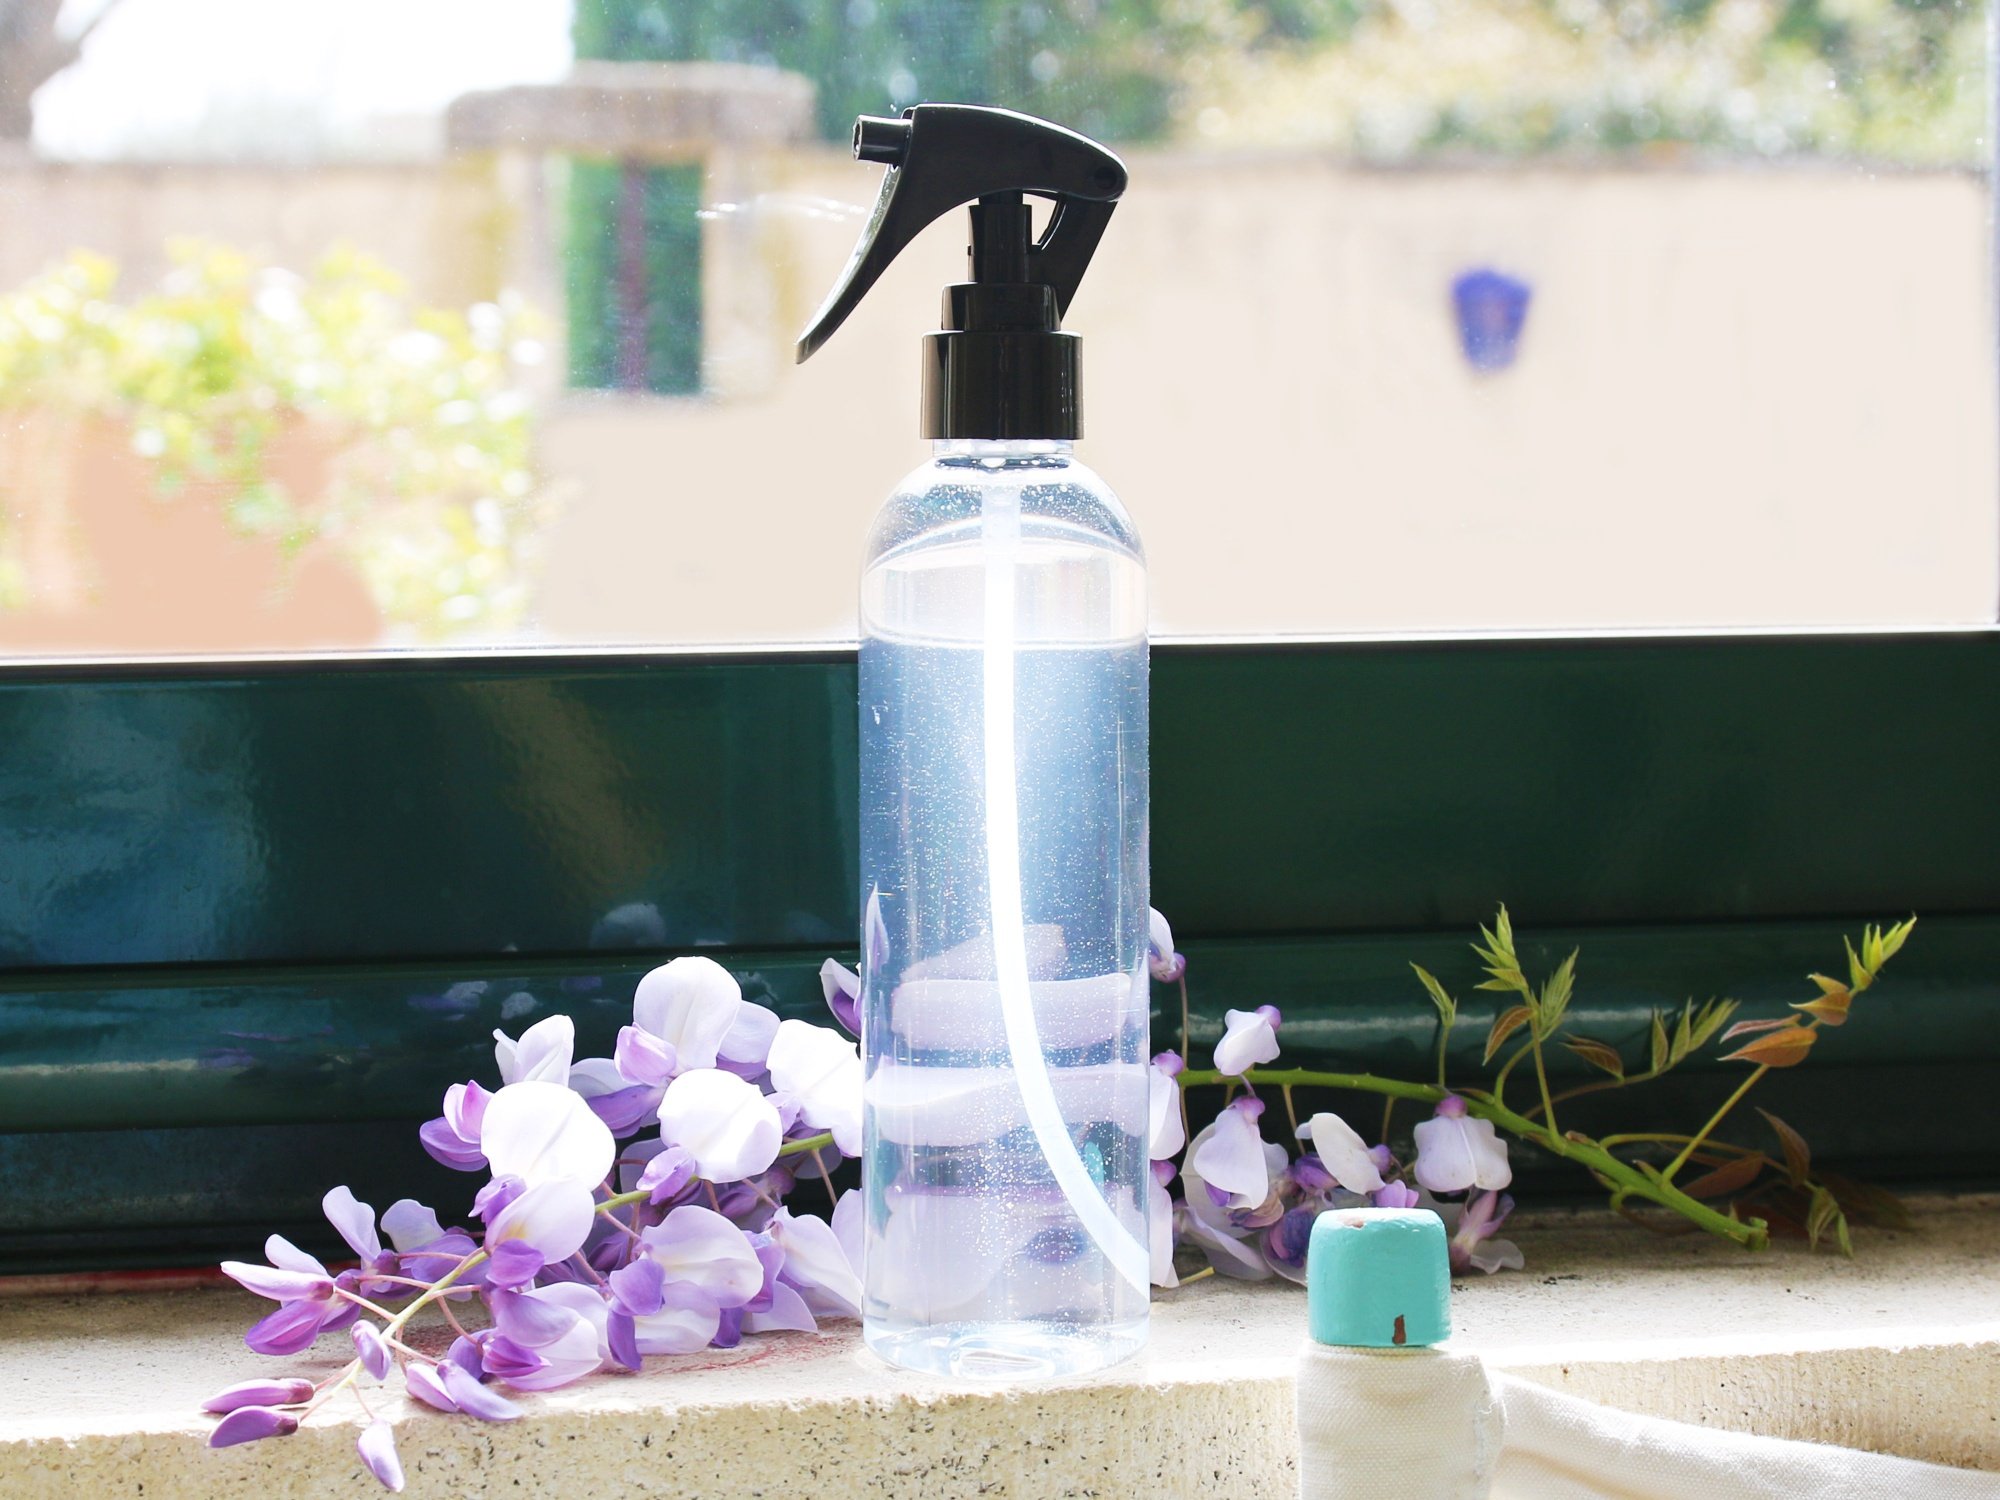 Spray Duo per superfici in vetro e acciaio inox anti-tracce ecologico